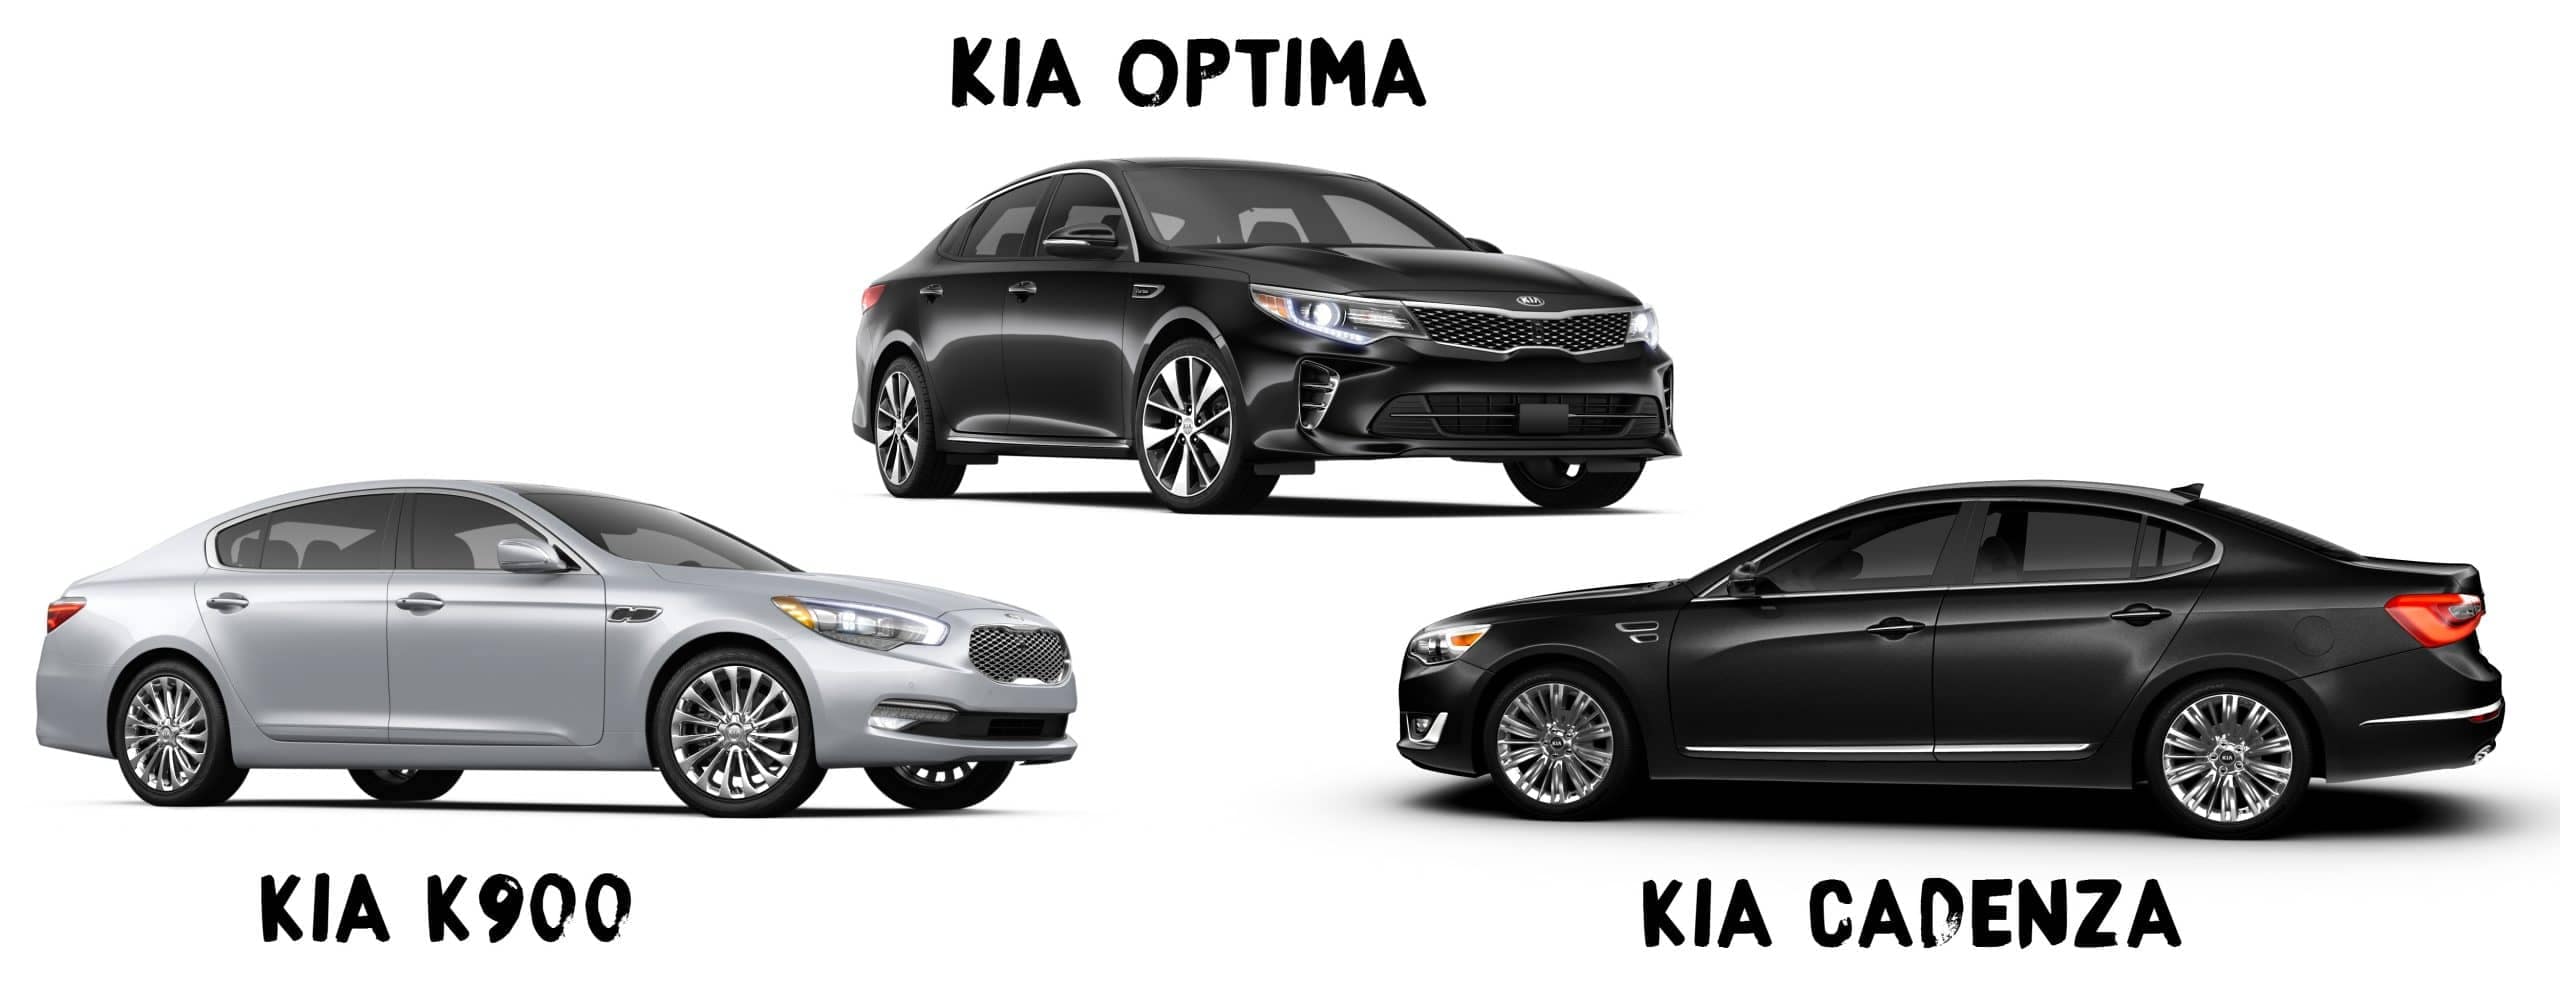 2016 Kia Sedans: Optima, Cadenza, and K900